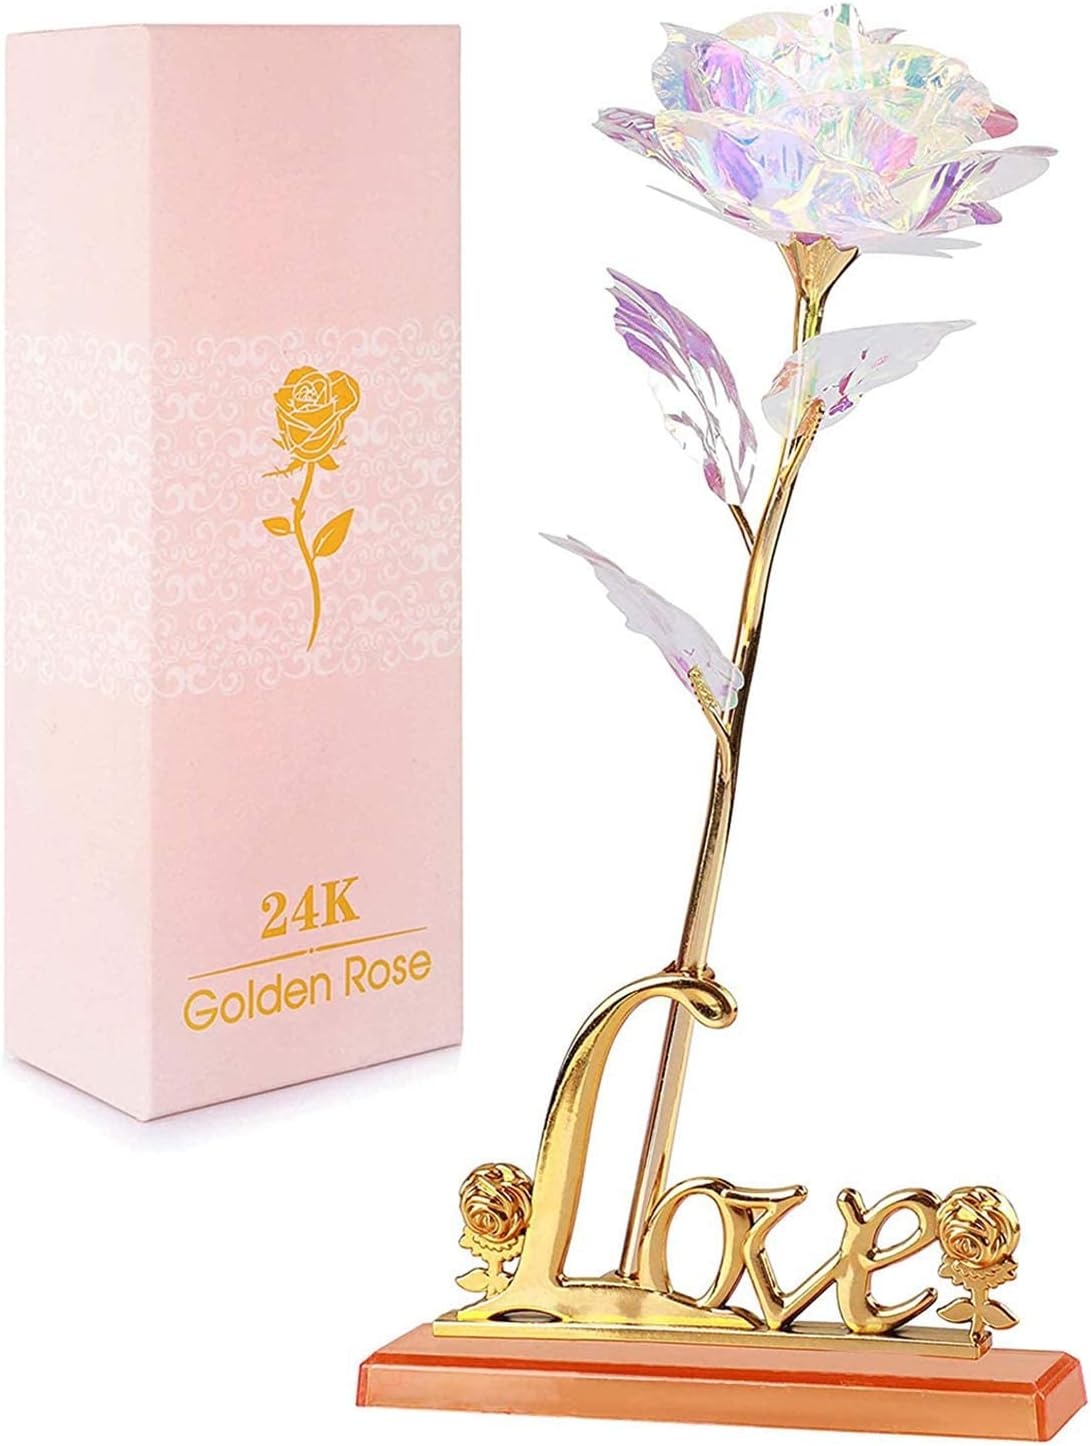 NewX 24K Gold Rose Geschenk für Frauen Blumen Künstlich Deko Unechte Blumen für ...